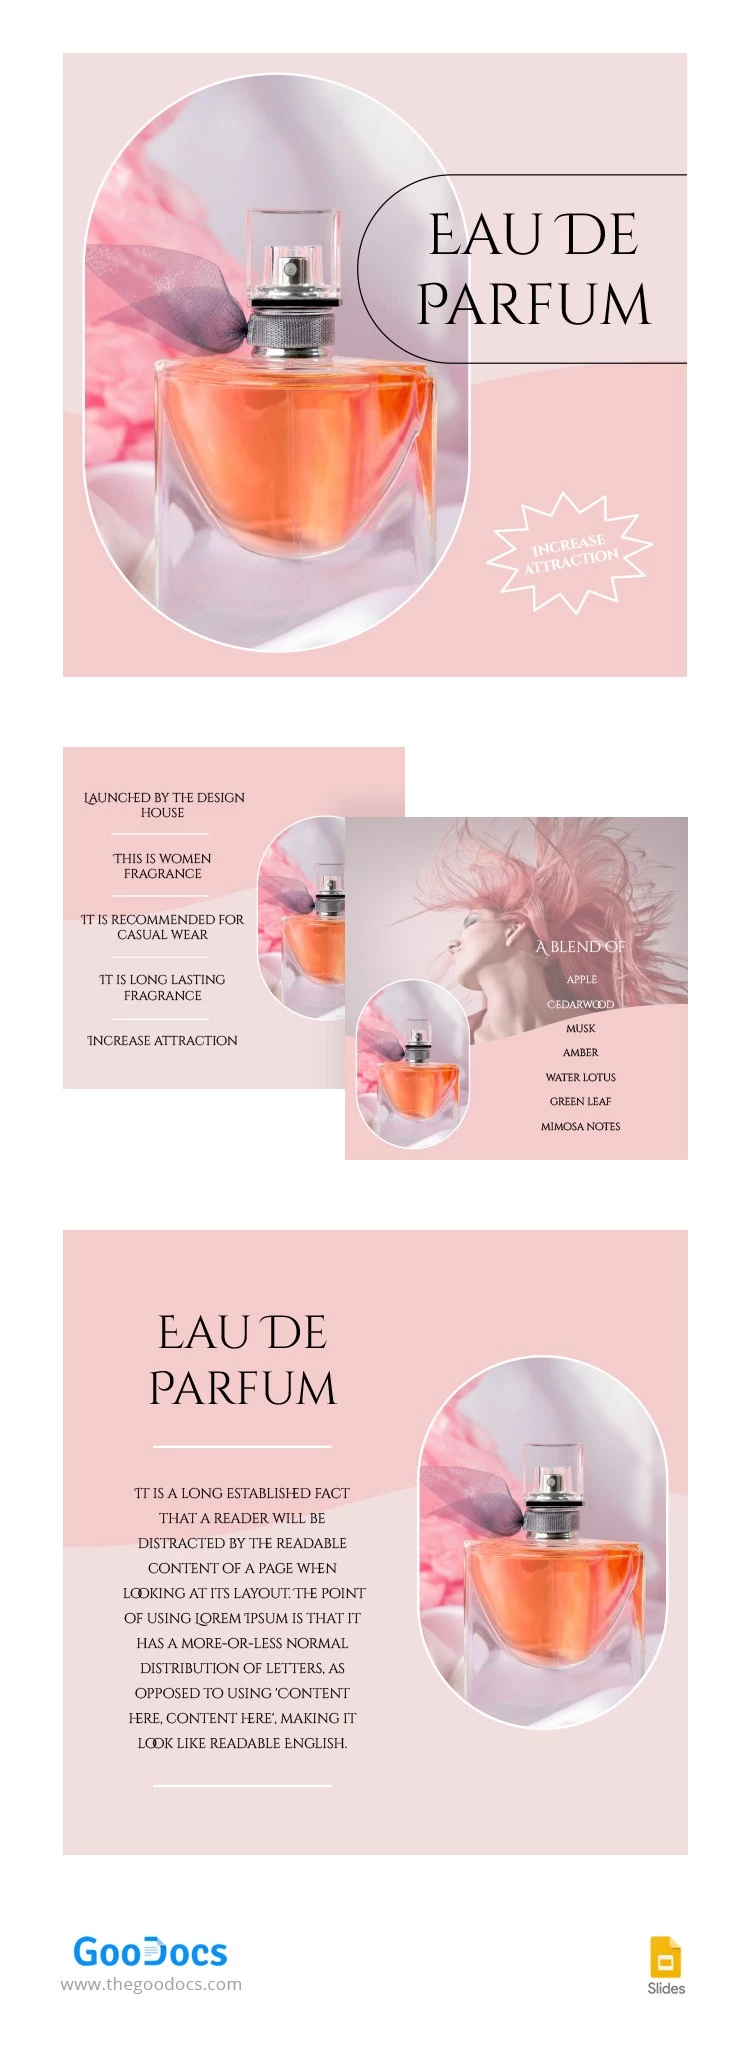 Attraktives Eau De Parfum Amazon Produkt - free Google Docs Template - 10063849